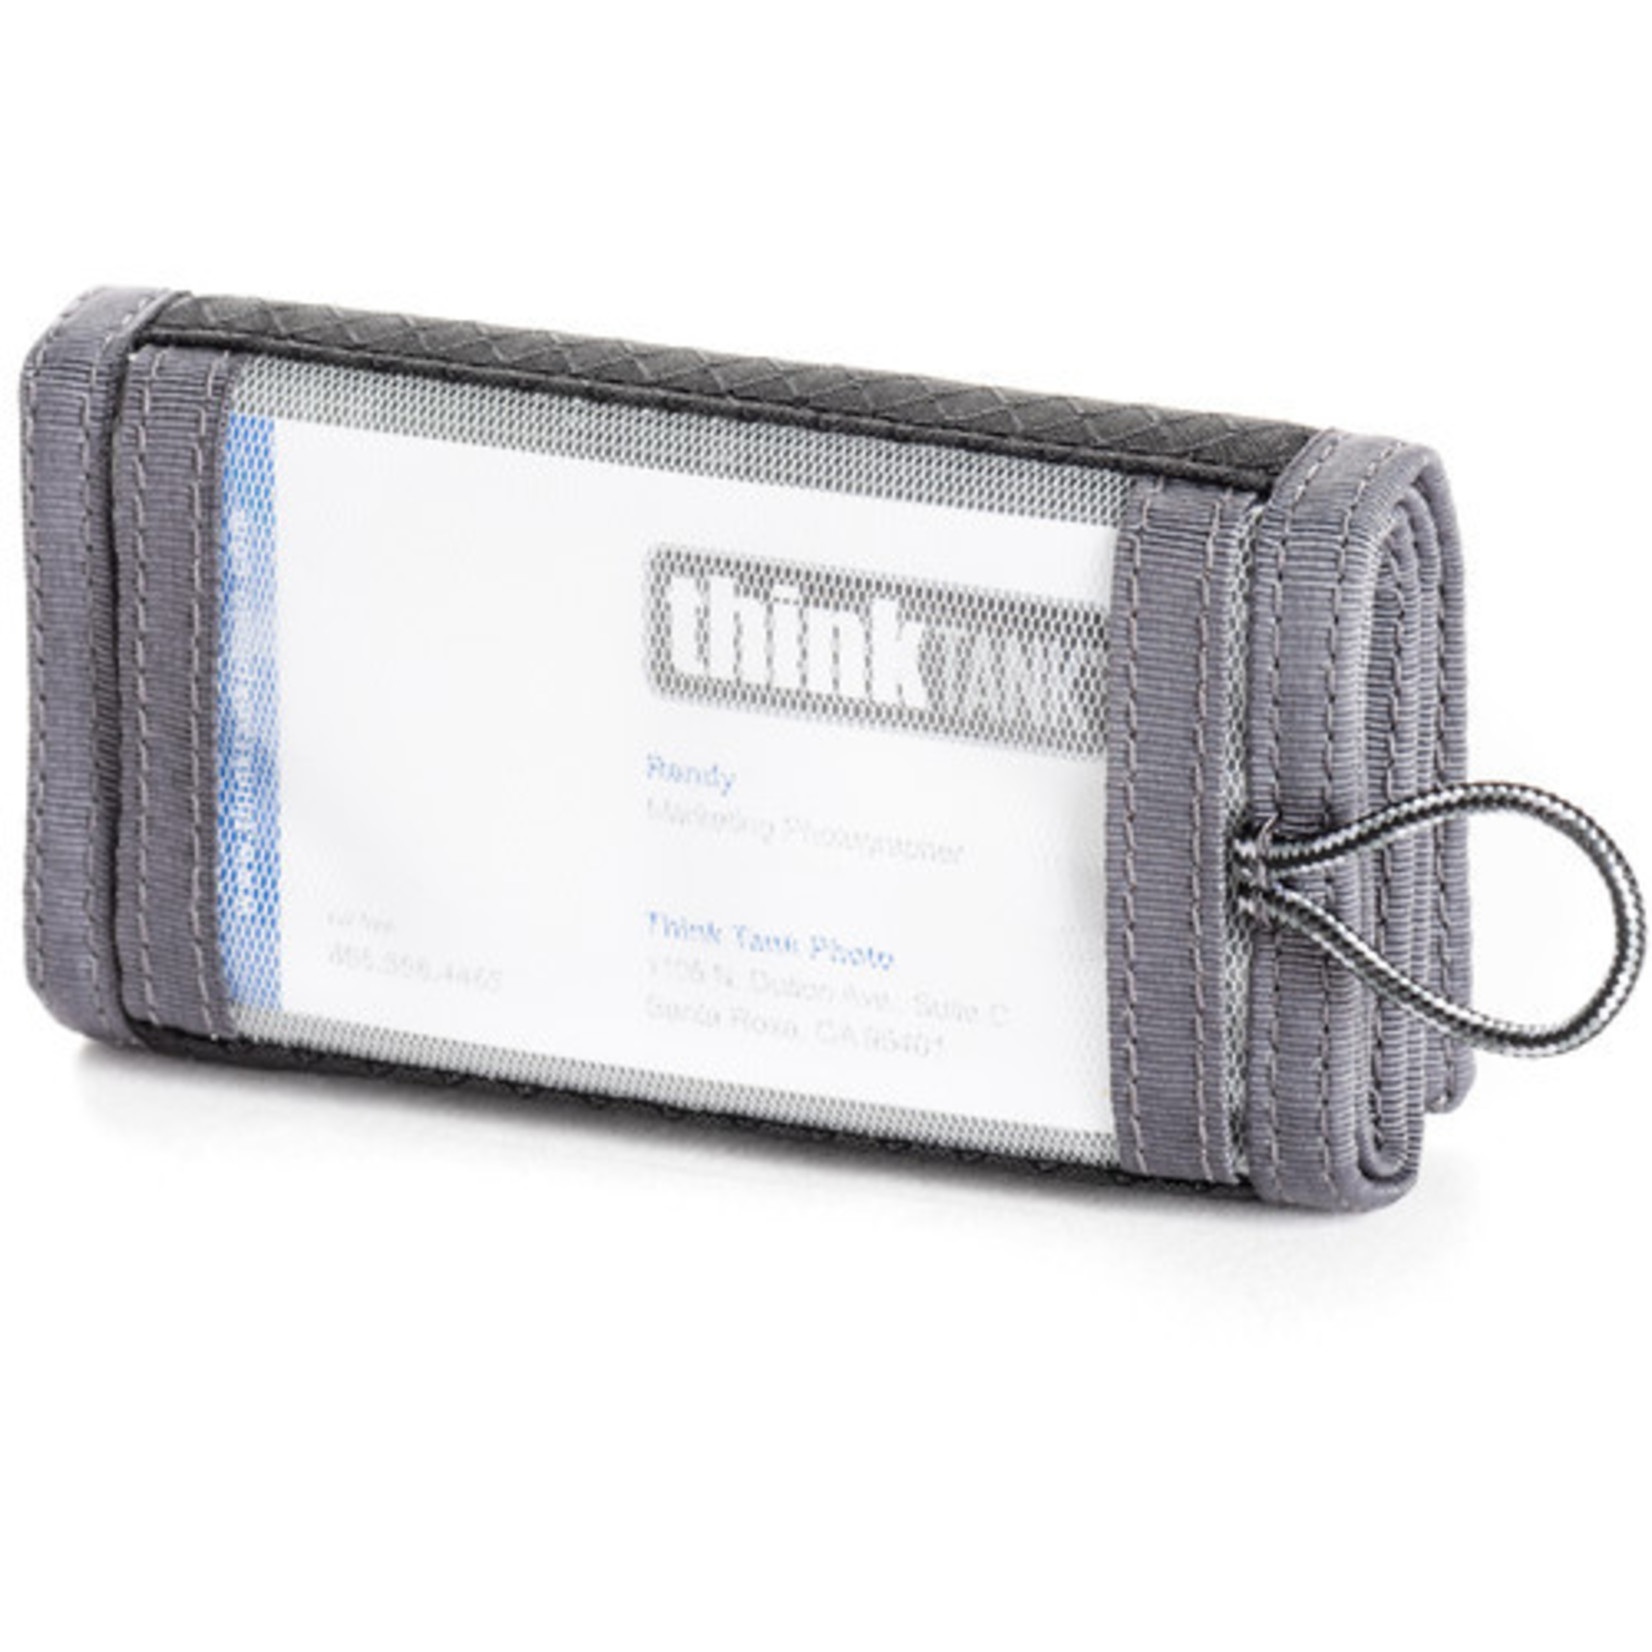 ThinkTank Pixel Pocket Rocket™ - Black